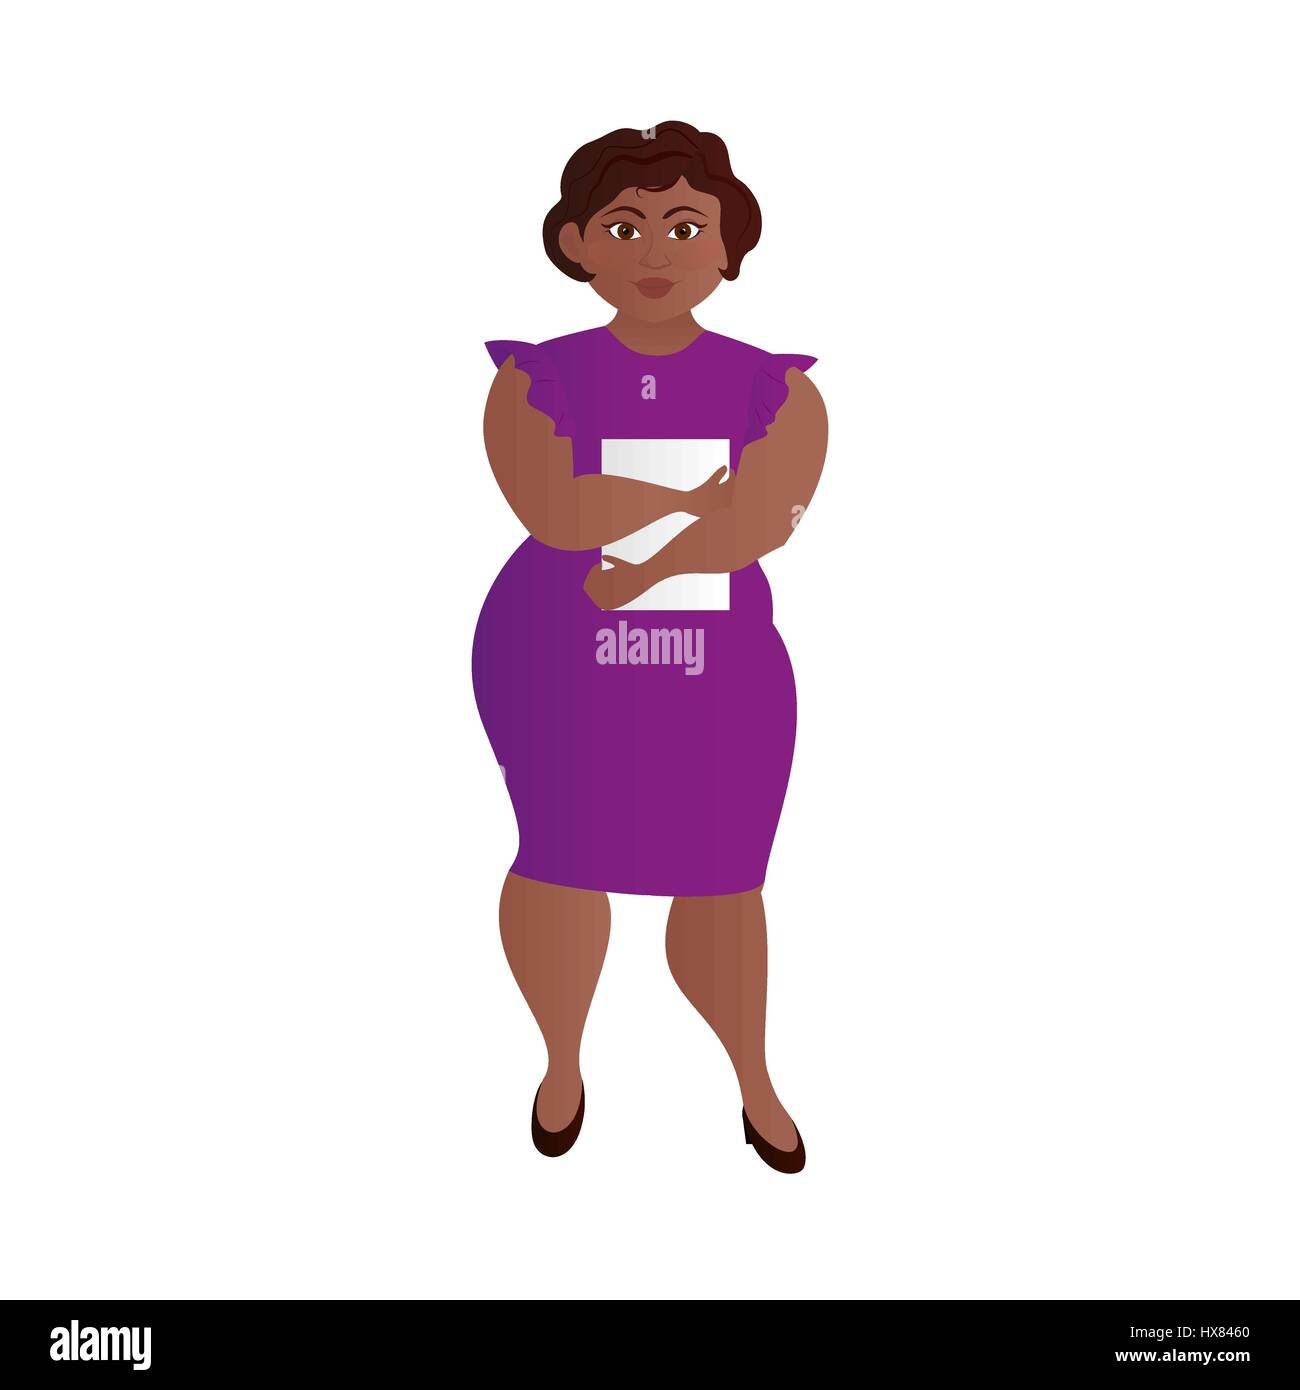 Business-Frau mit dunkler Haut und Übergewicht in einem eleganten Kleid auf einem hellen Hintergrund. Isoliert. Vektor-illustration Stock Vektor